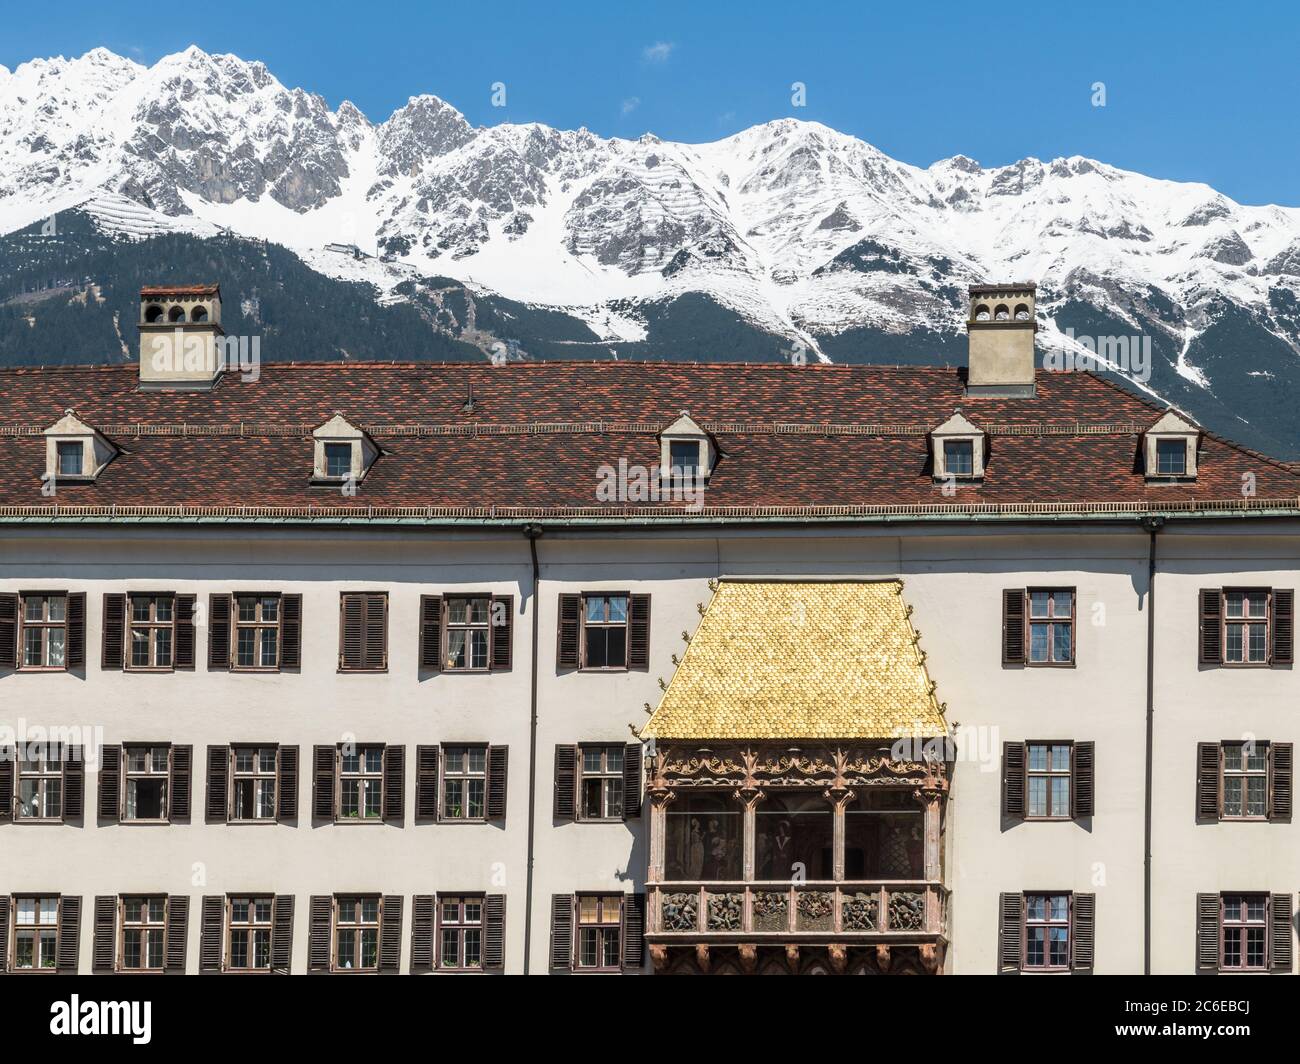 INNSBRUCK, ÖSTERREICH - 5. MAI 2016: Das ikonische kupfergeflieste Goldene Dachl in der Altstadt von Innsbruck, Österreich. Die schneebedeckten Gipfel der Alpen Stockfoto